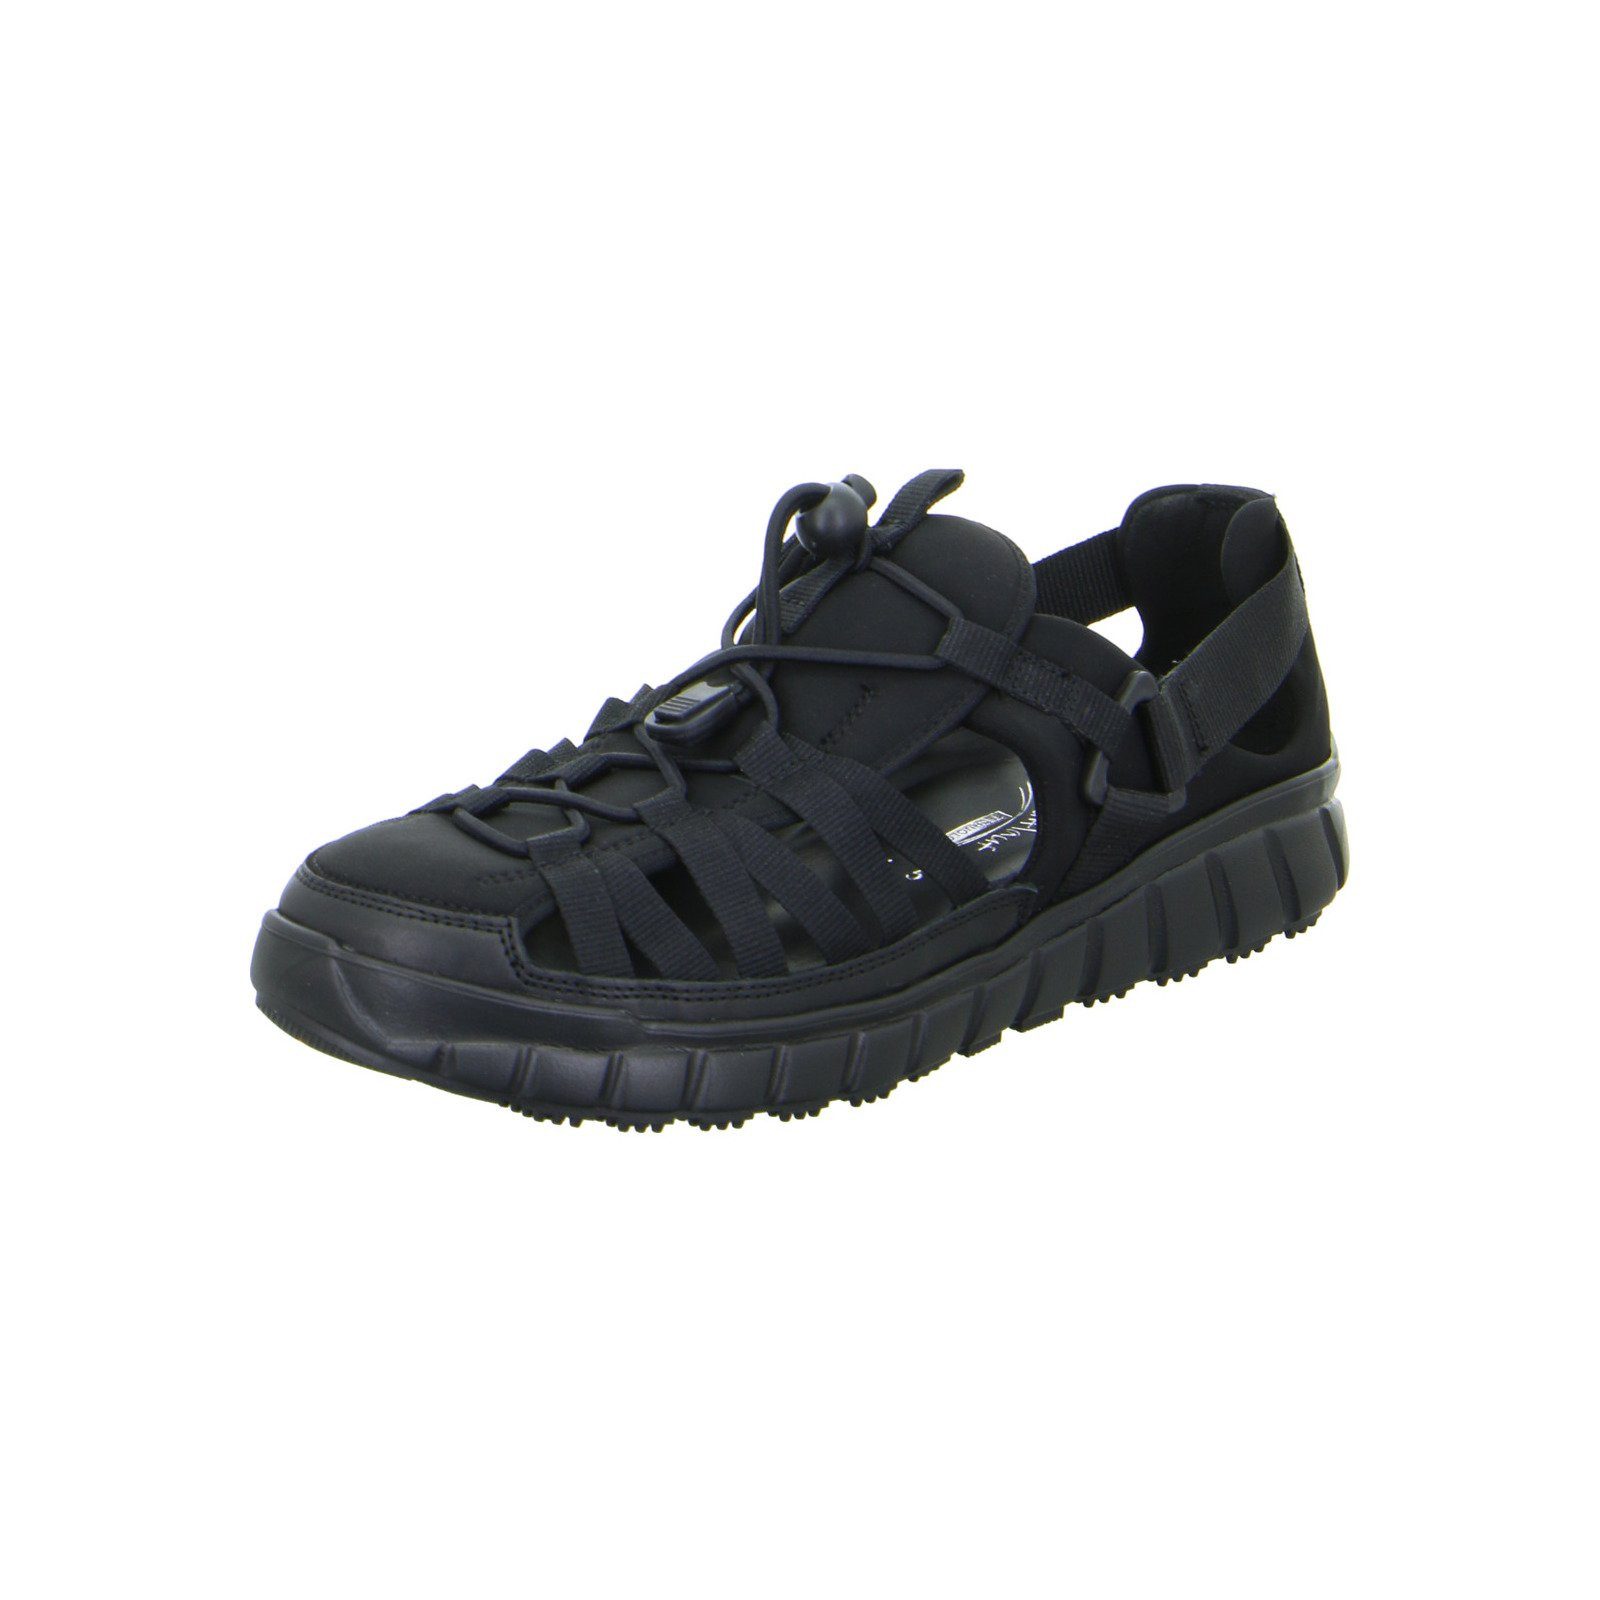 Ganter Evo - Damen Schuhe Sandalette Sneaker Textil schwarz